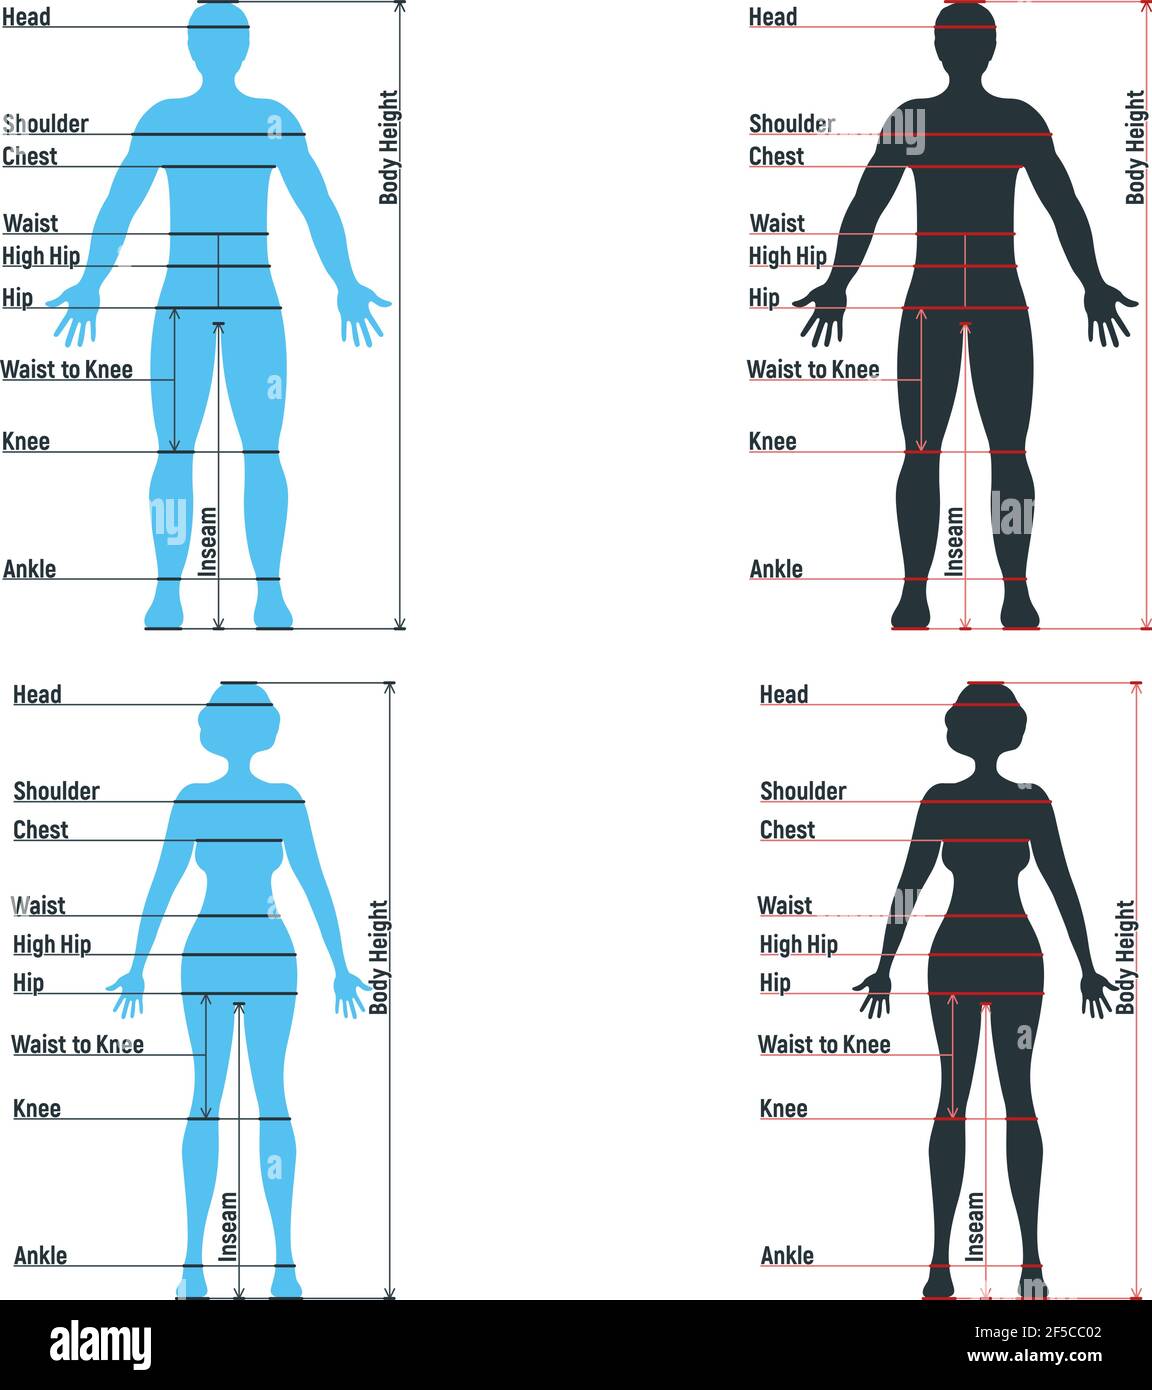 Tableau de taille femelle et mâle anatomie personnage humain, personnes maquette devant et vue latérale silhouette de corps, isolé sur blanc, illustration vectorielle plate. Voiture Illustration de Vecteur